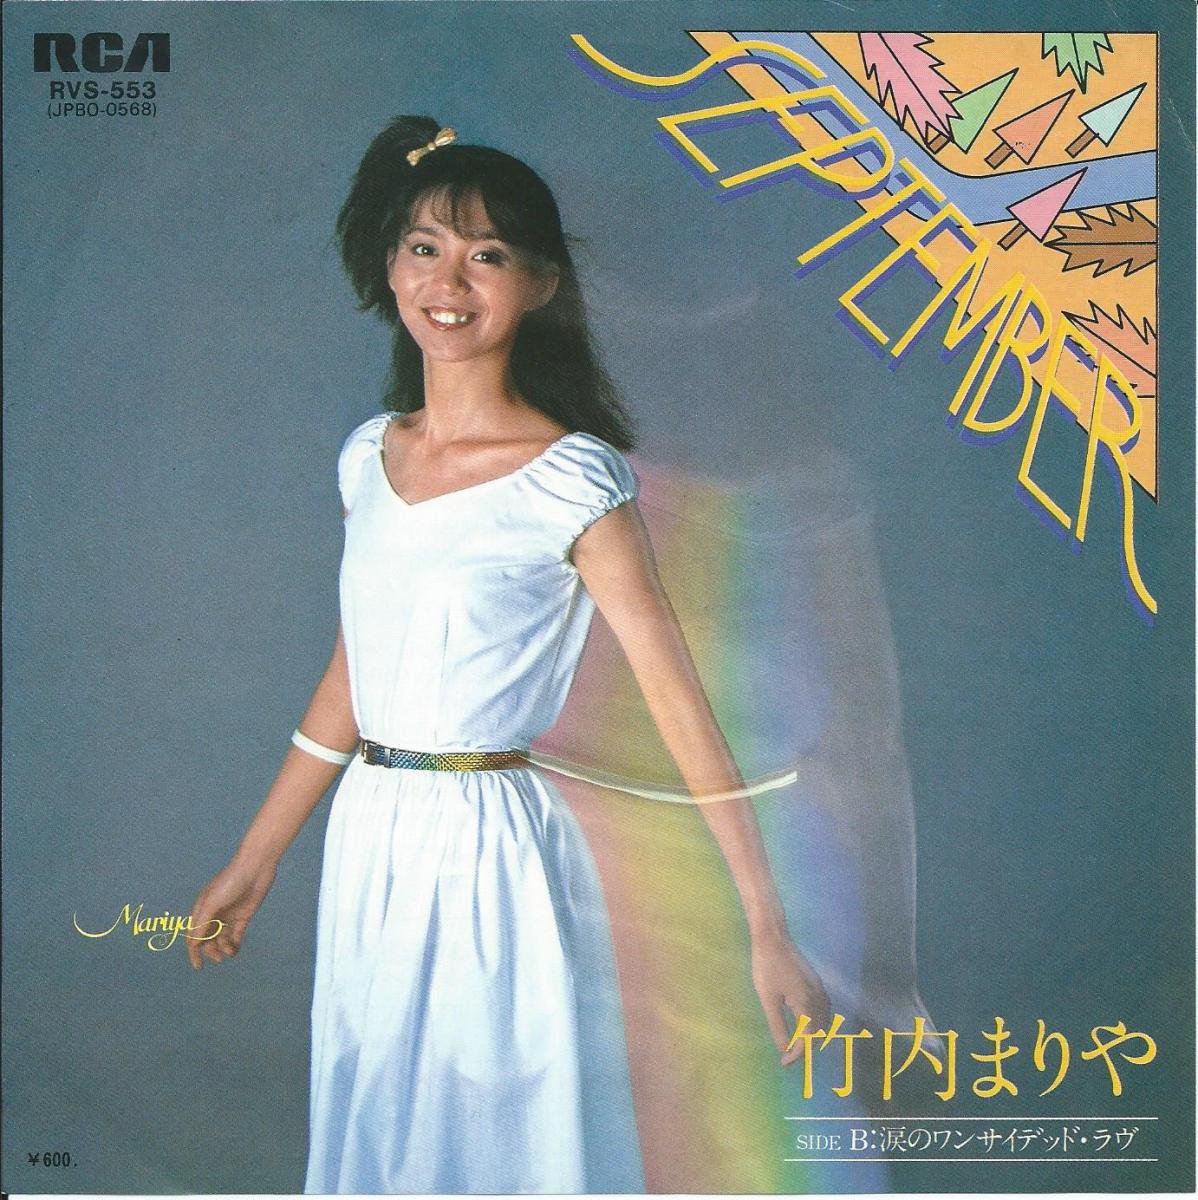 竹内まりや MARIYA TAKEUCHI / SEPTEMBER セプテンバー (7) - HIP TANK RECORDS